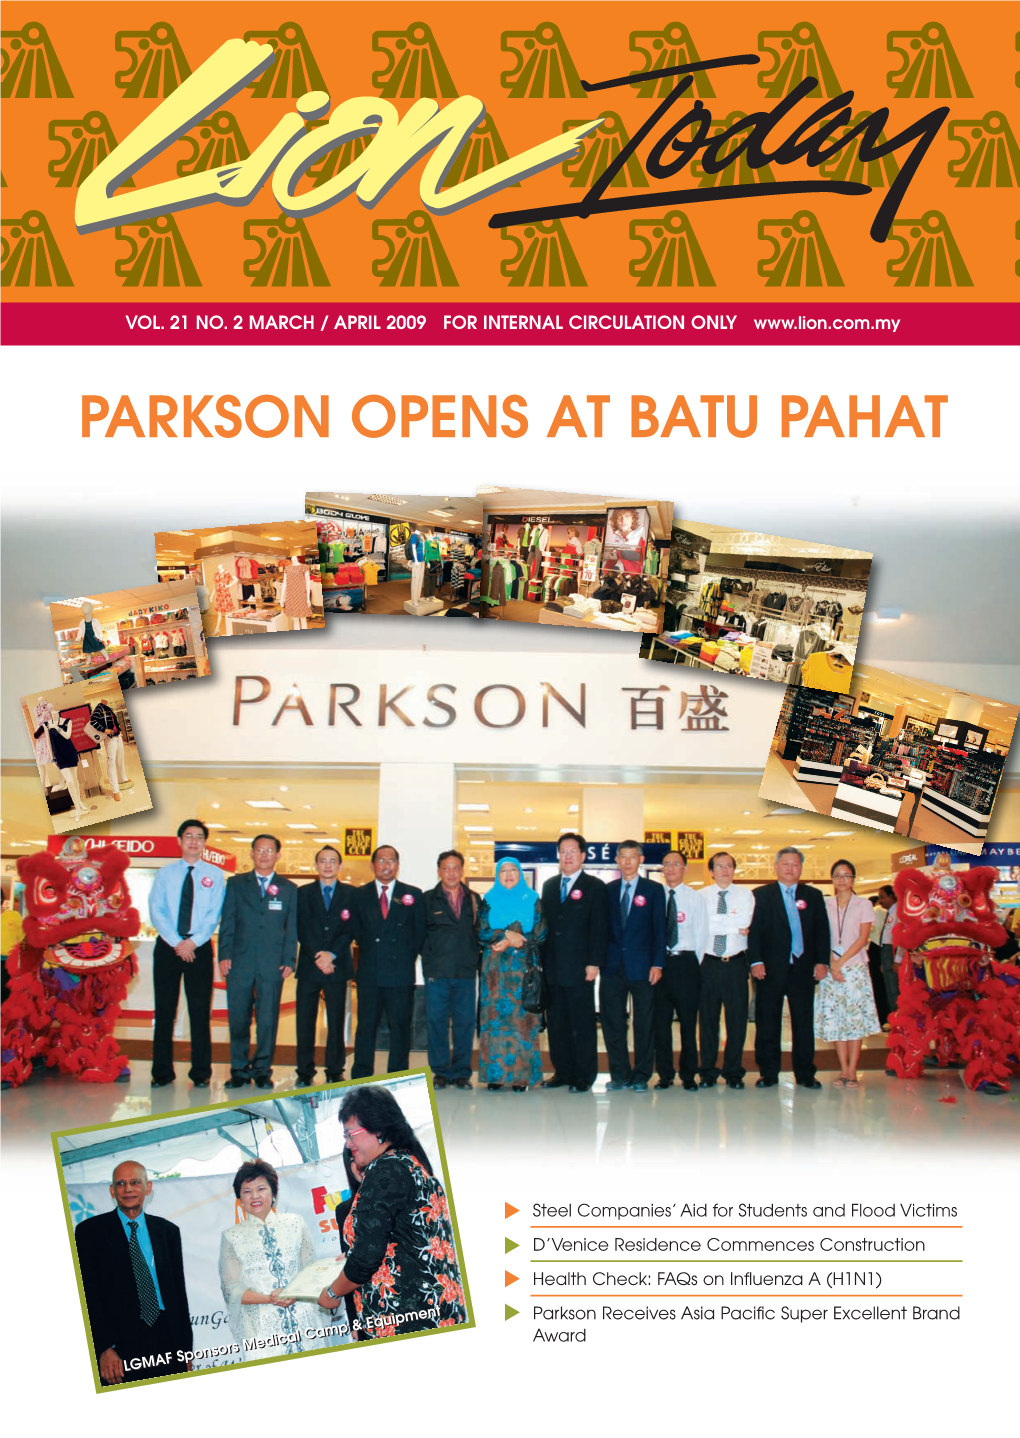 Parkson Opens at Batu Pahat